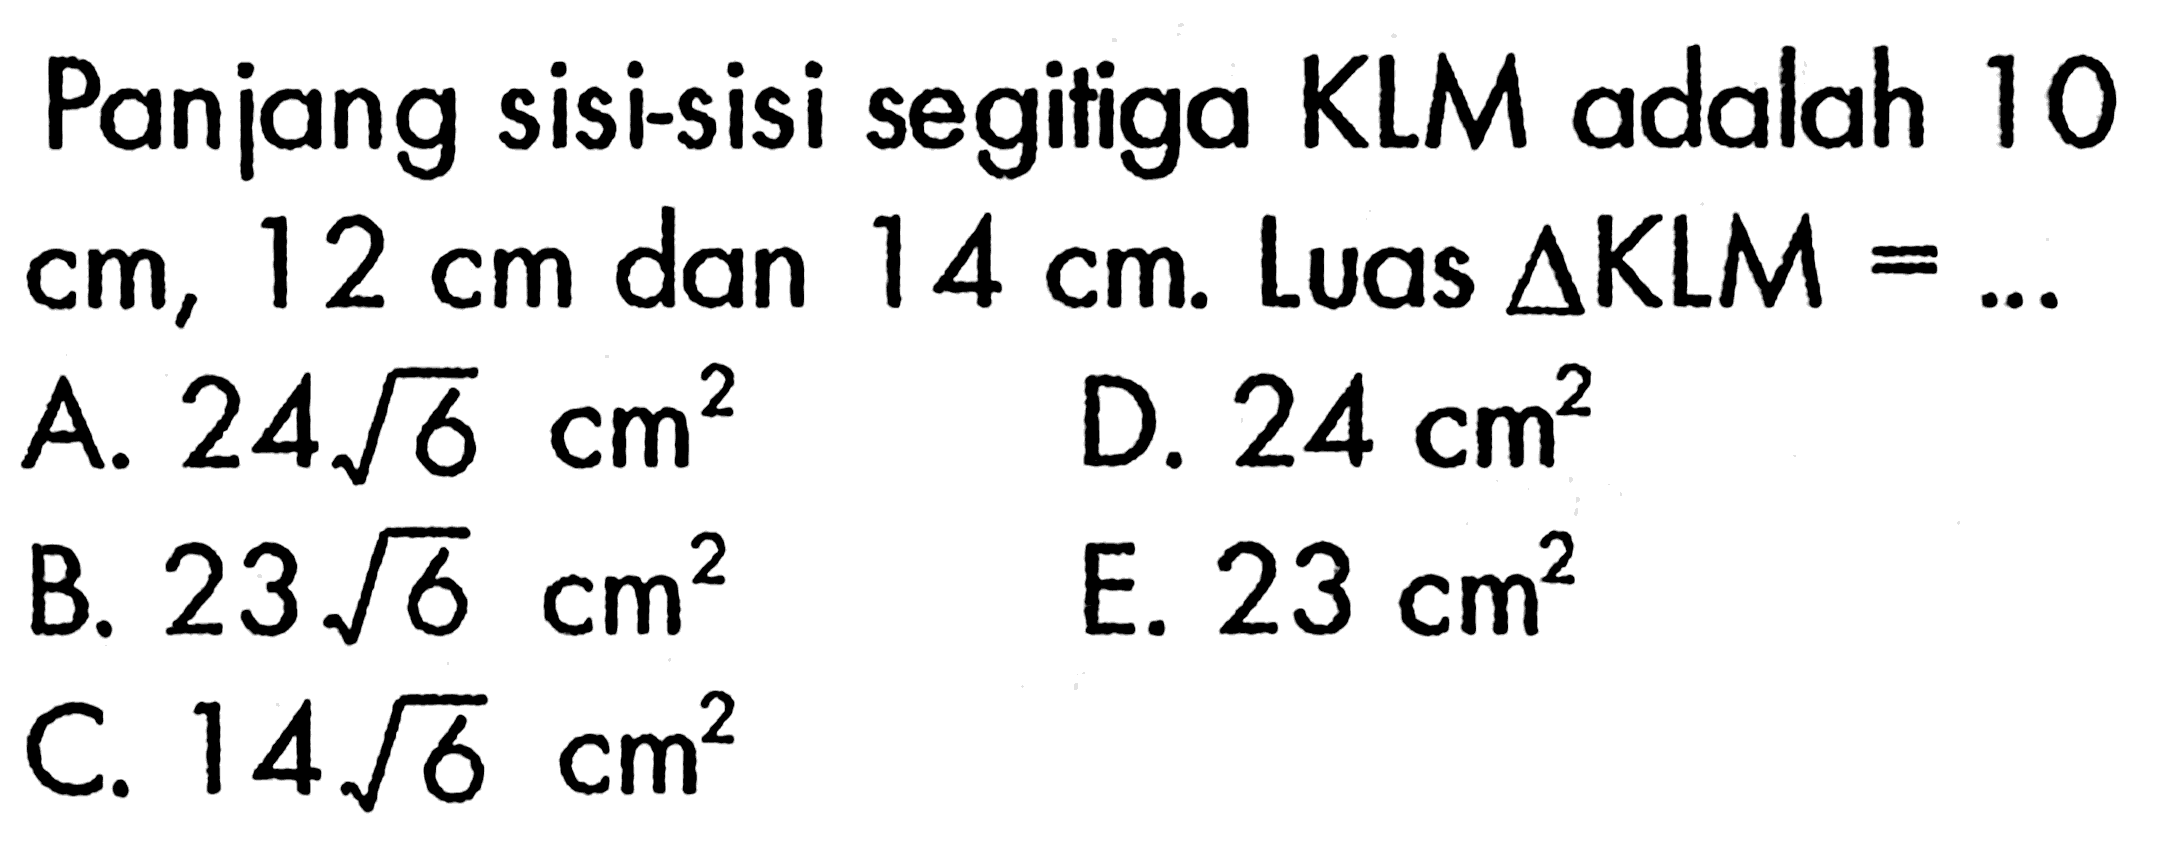 Panjang sisi-sisi segitiga KLM adalah 10  cm, 12 cm  dan  14 cm .  Luas  segitiga KLM=.... 